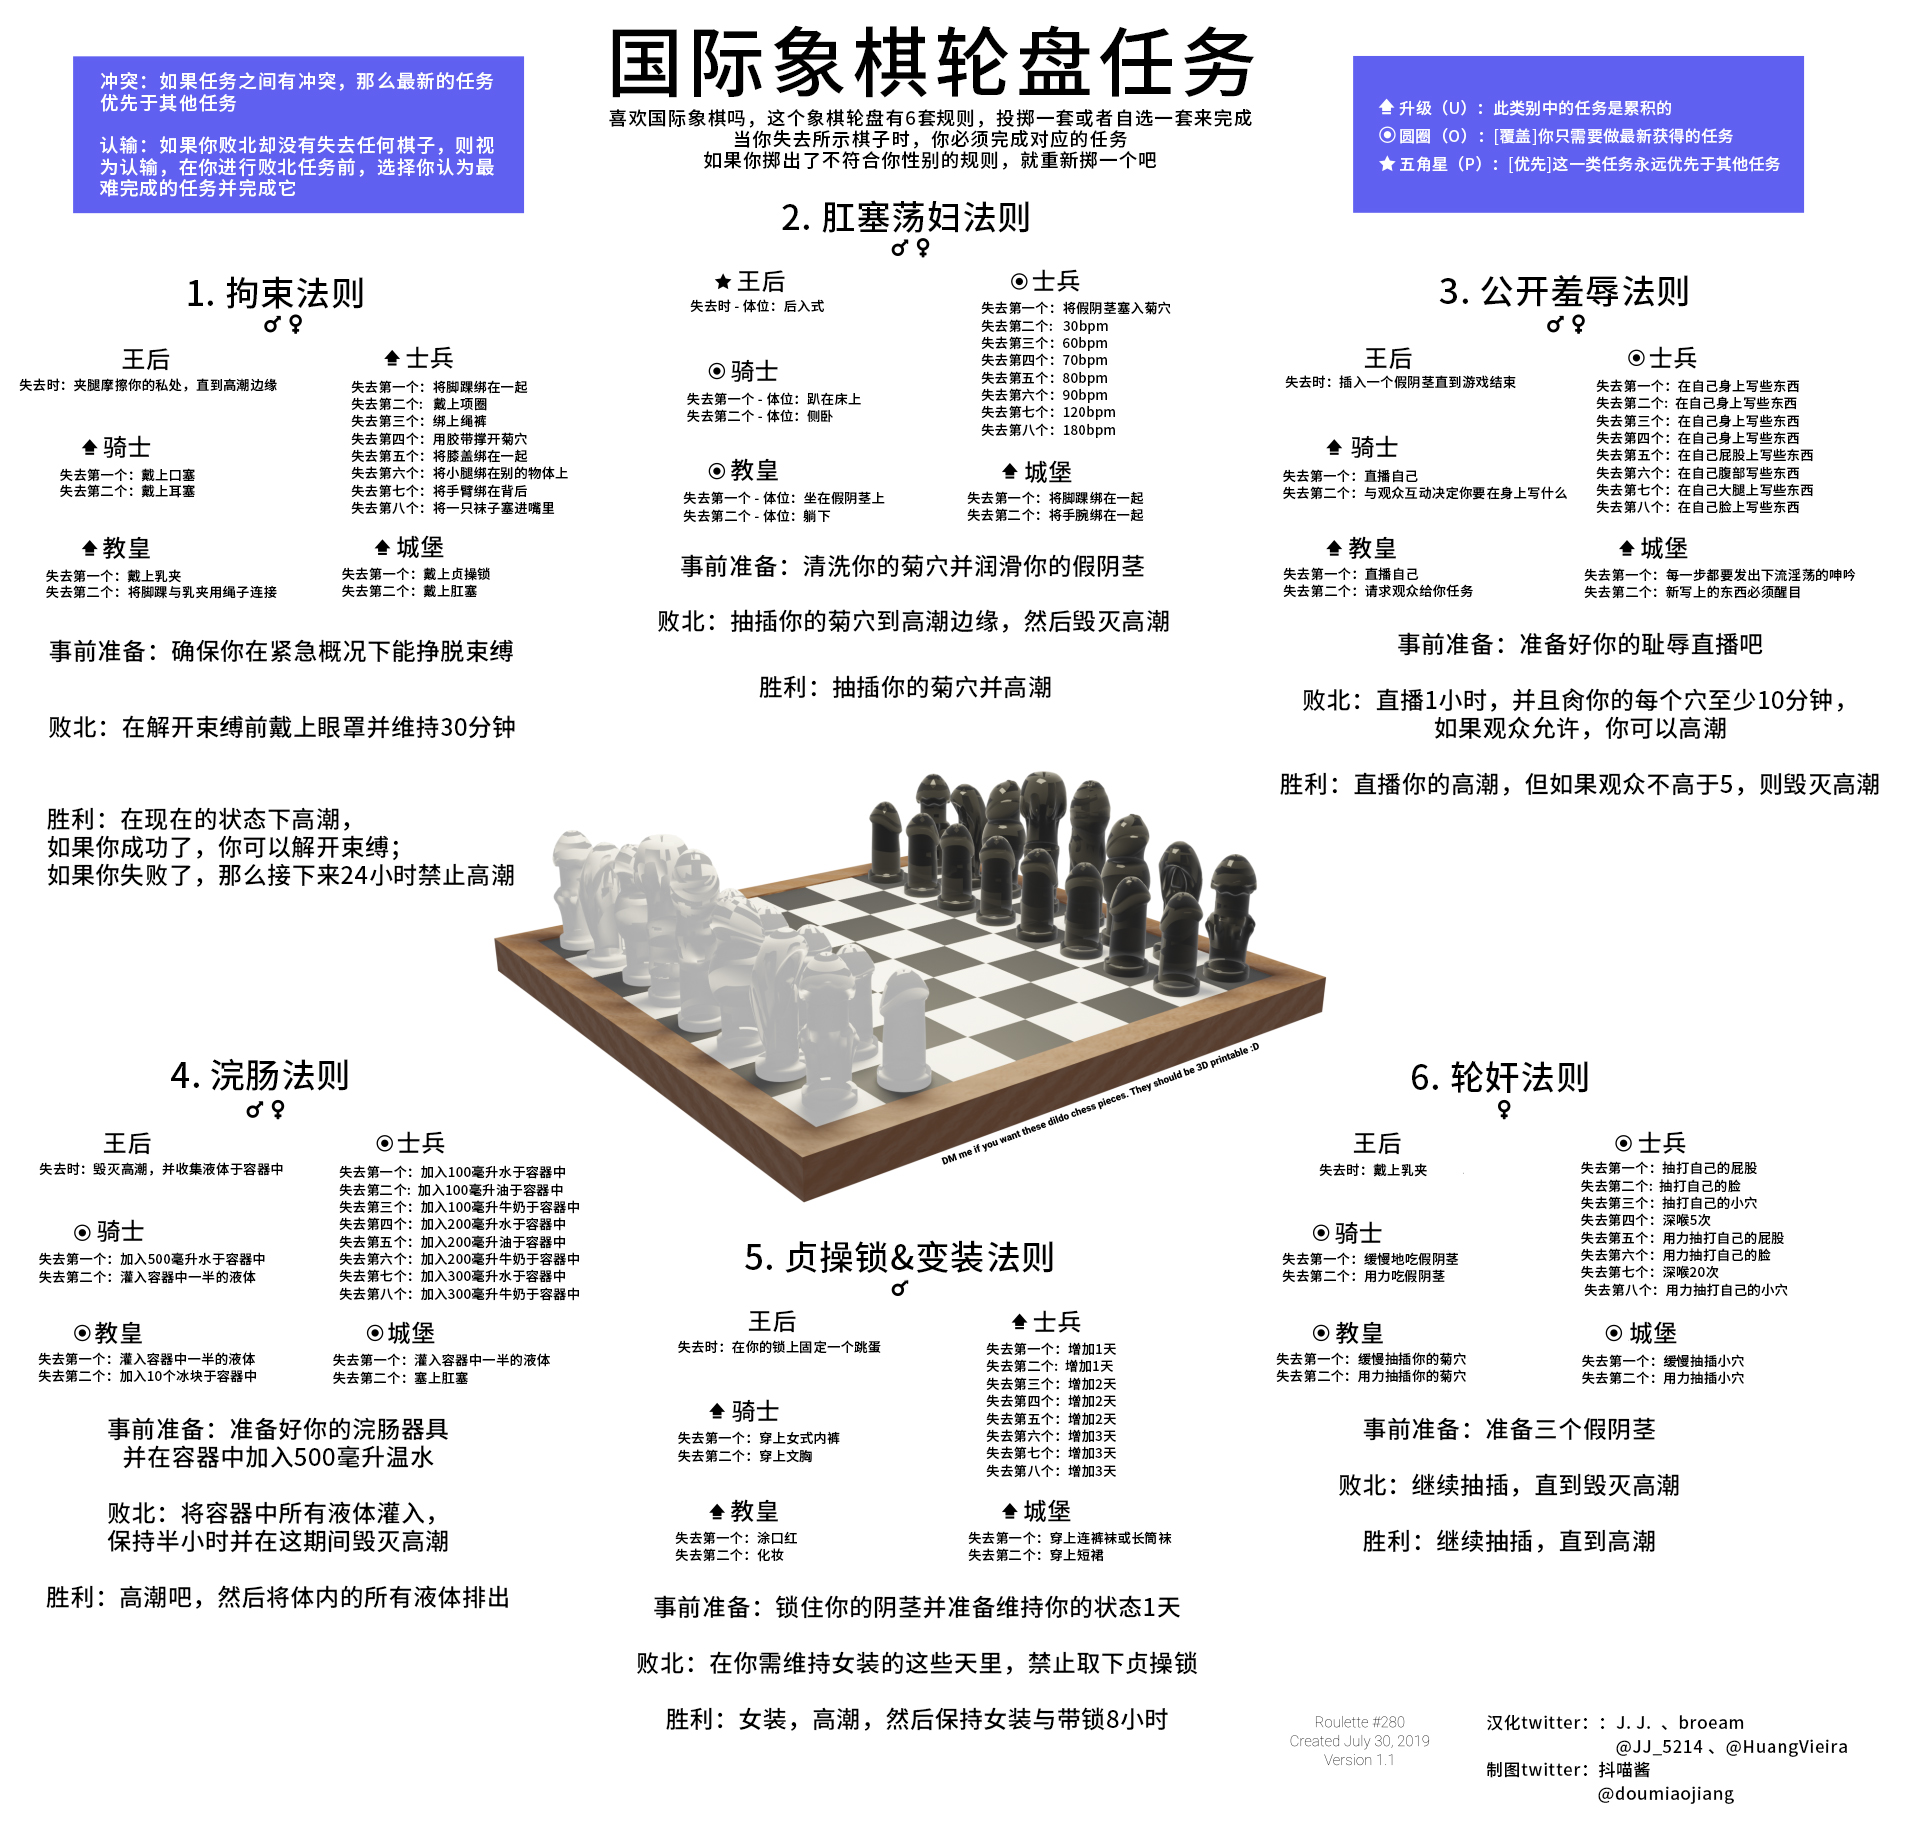 国际象棋轮盘任务.jpg